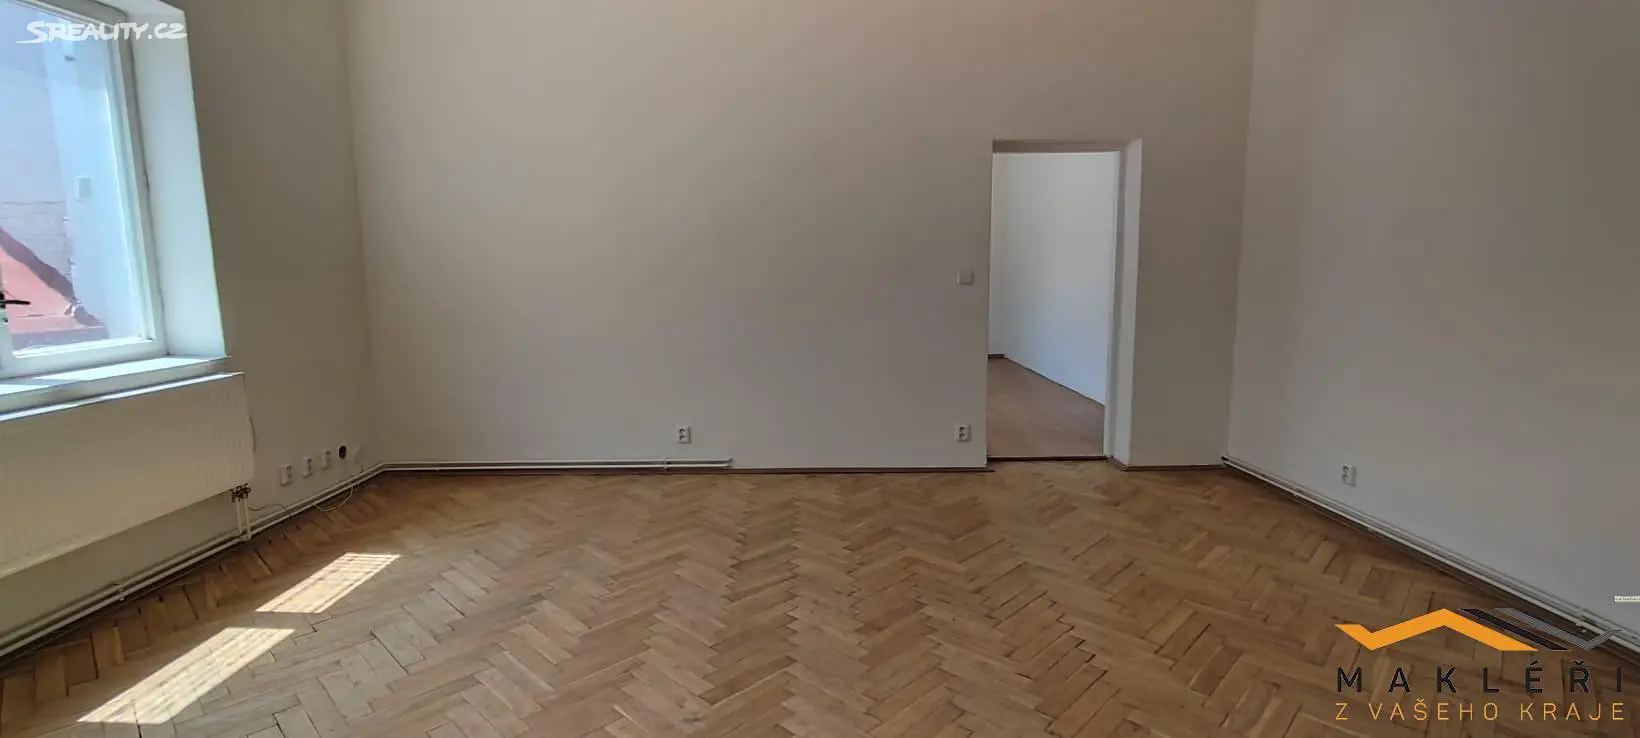 Pronájem bytu 3+1 74 m² (Loft), Palackého, Jihlava